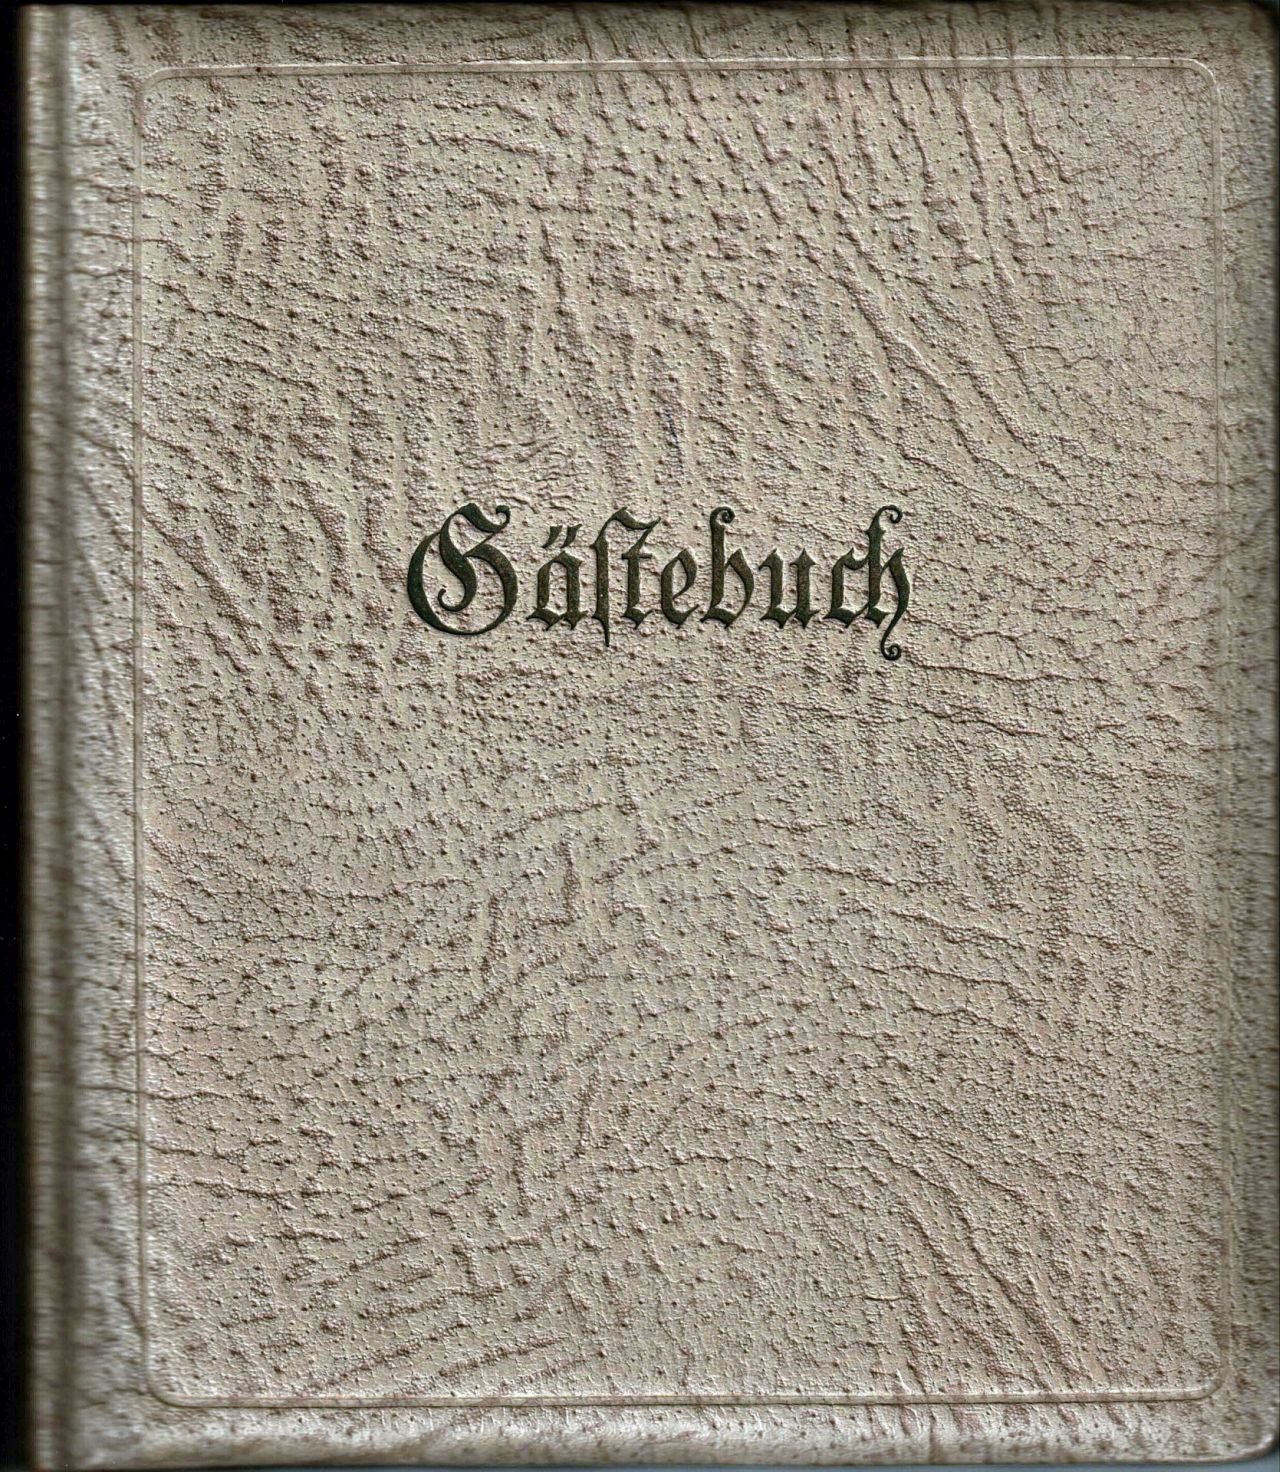 Gästebuch des Drusenkabinetts auf dem Abrahamschacht in Freiberg (Saxonia-Freiberg-Stiftung CC BY-NC-SA)